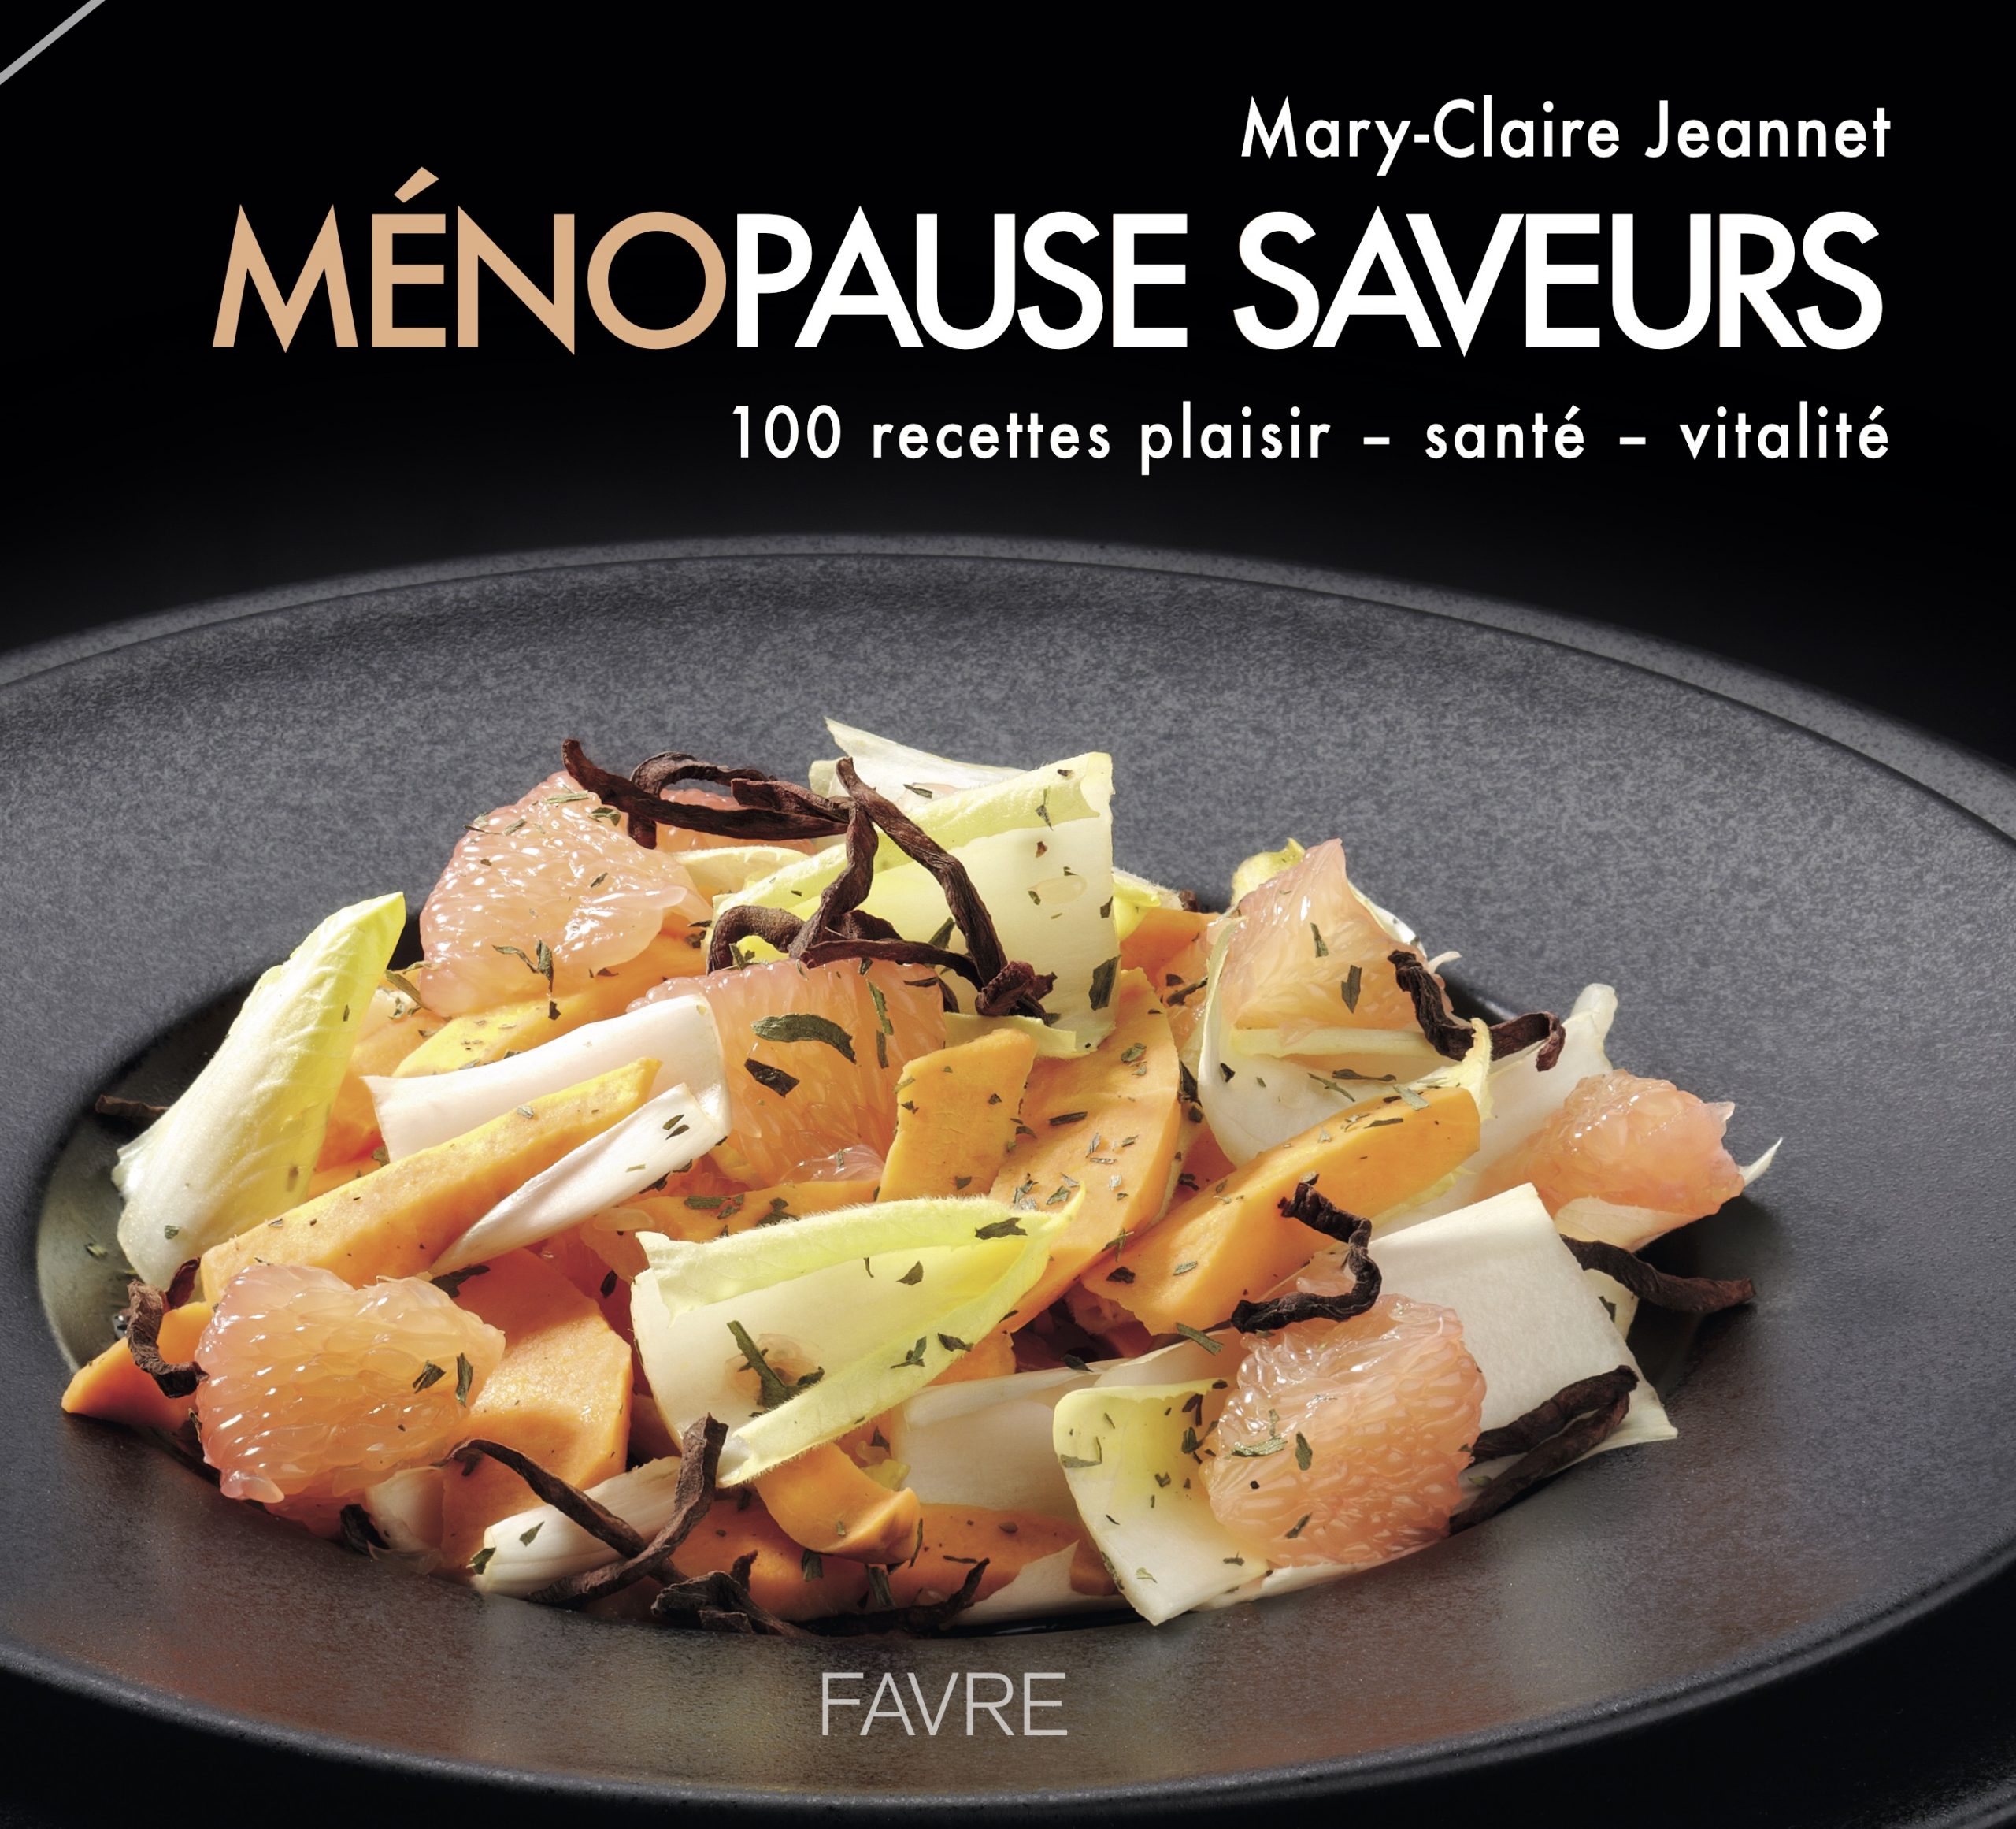 Meilleurs livres de cuisine - Marie Claire